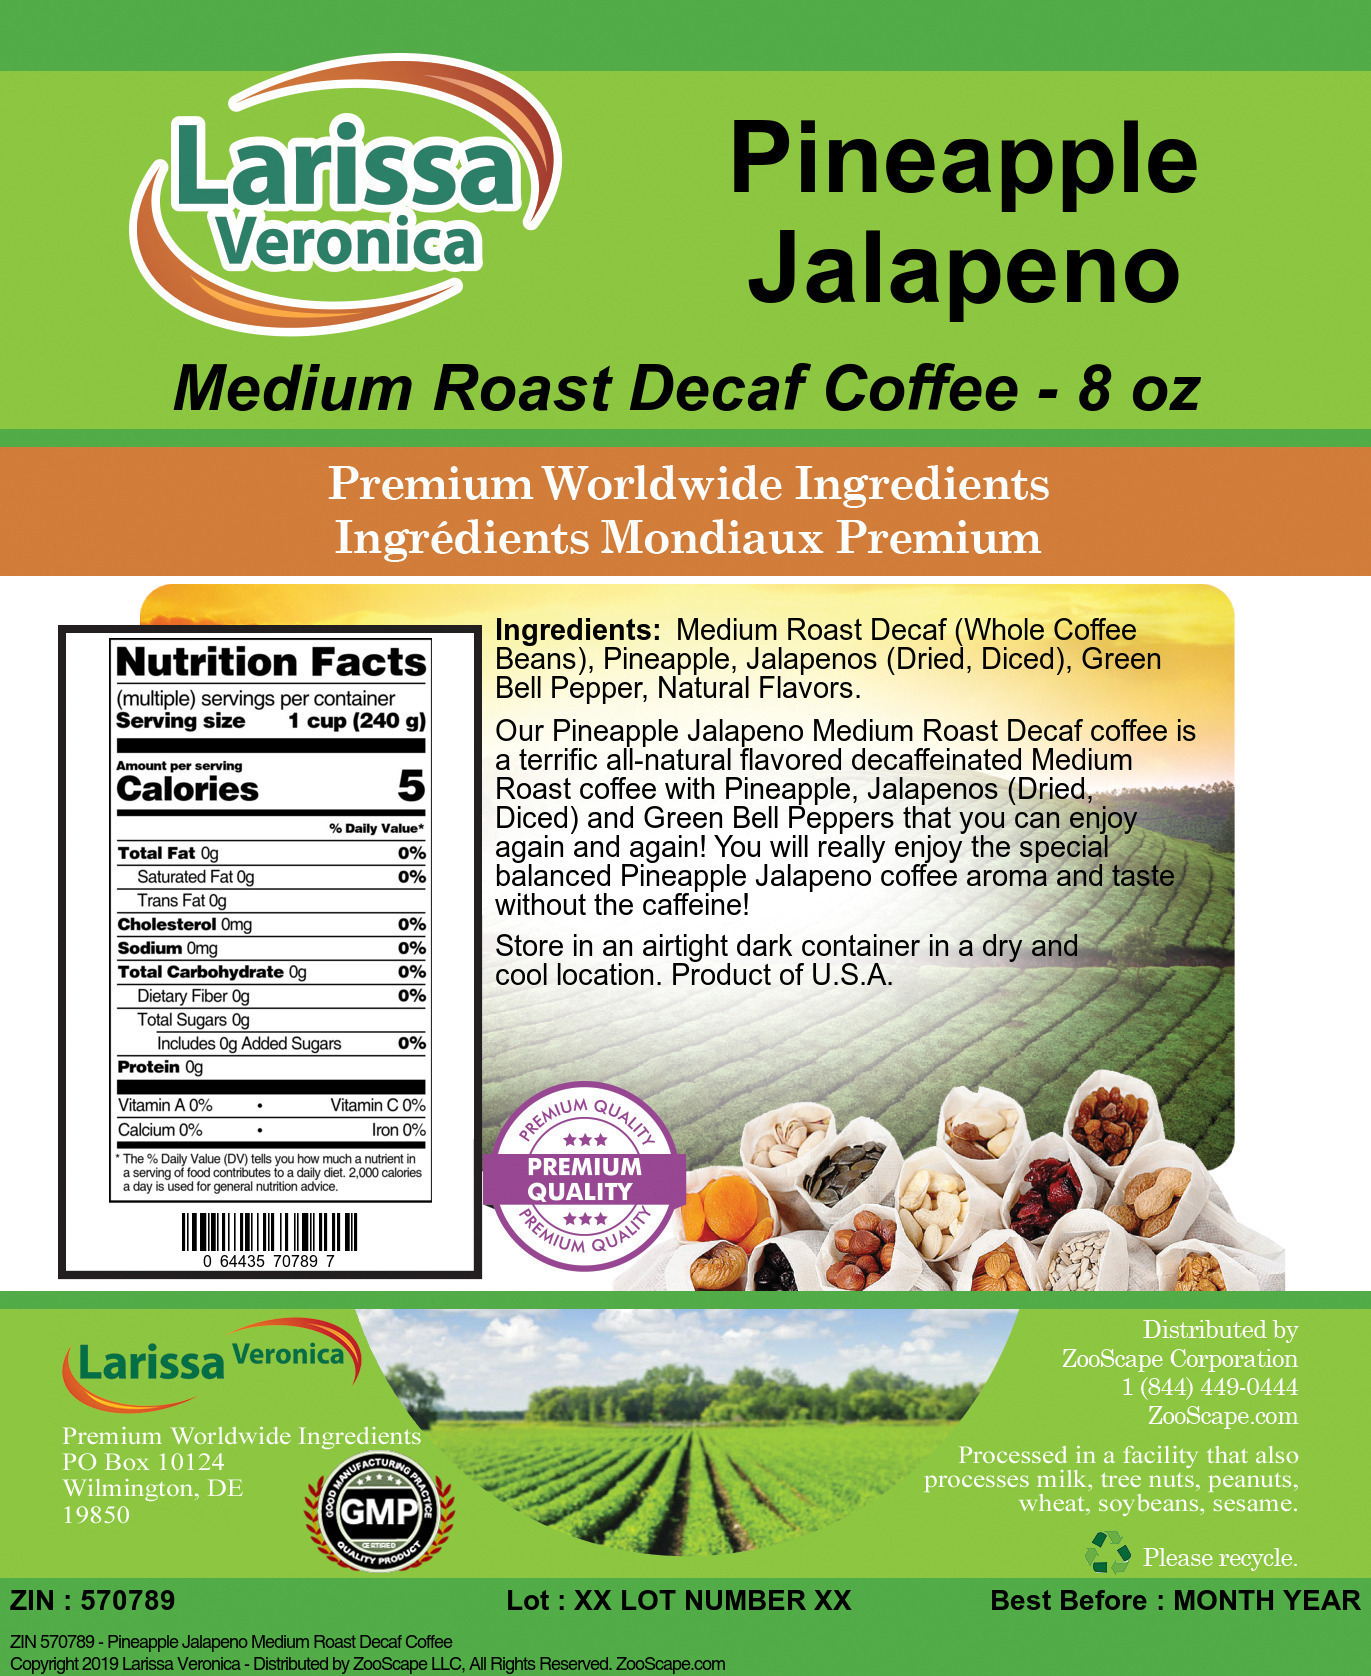 Pineapple Jalapeno Medium Roast Decaf Coffee - Label